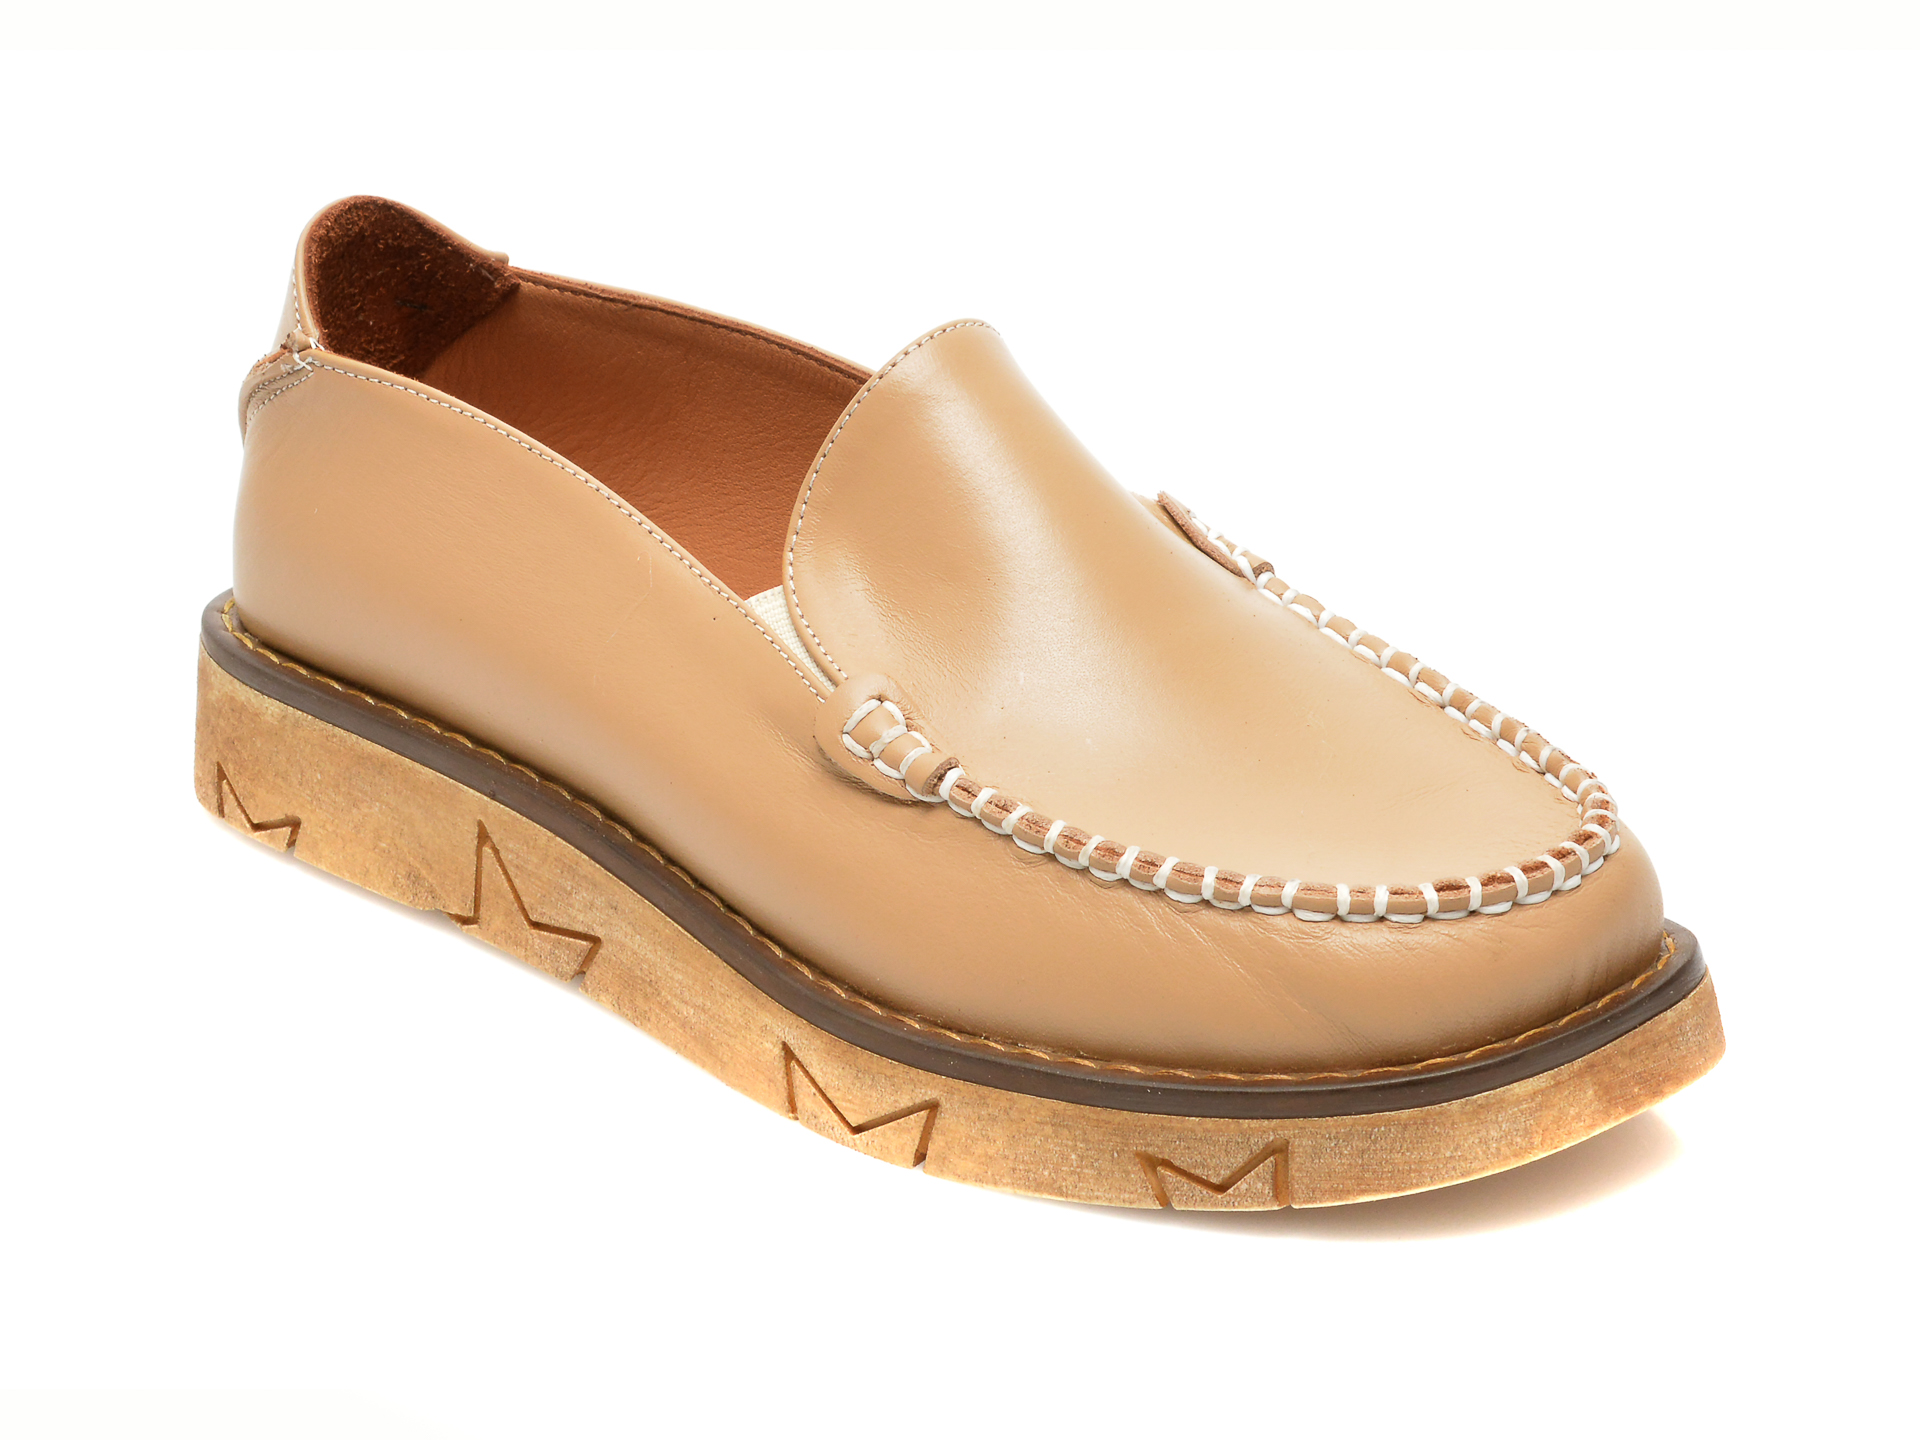 Pantofi FLAVIA PASSINI maro, 901110, din piele naturala Flavia Passini